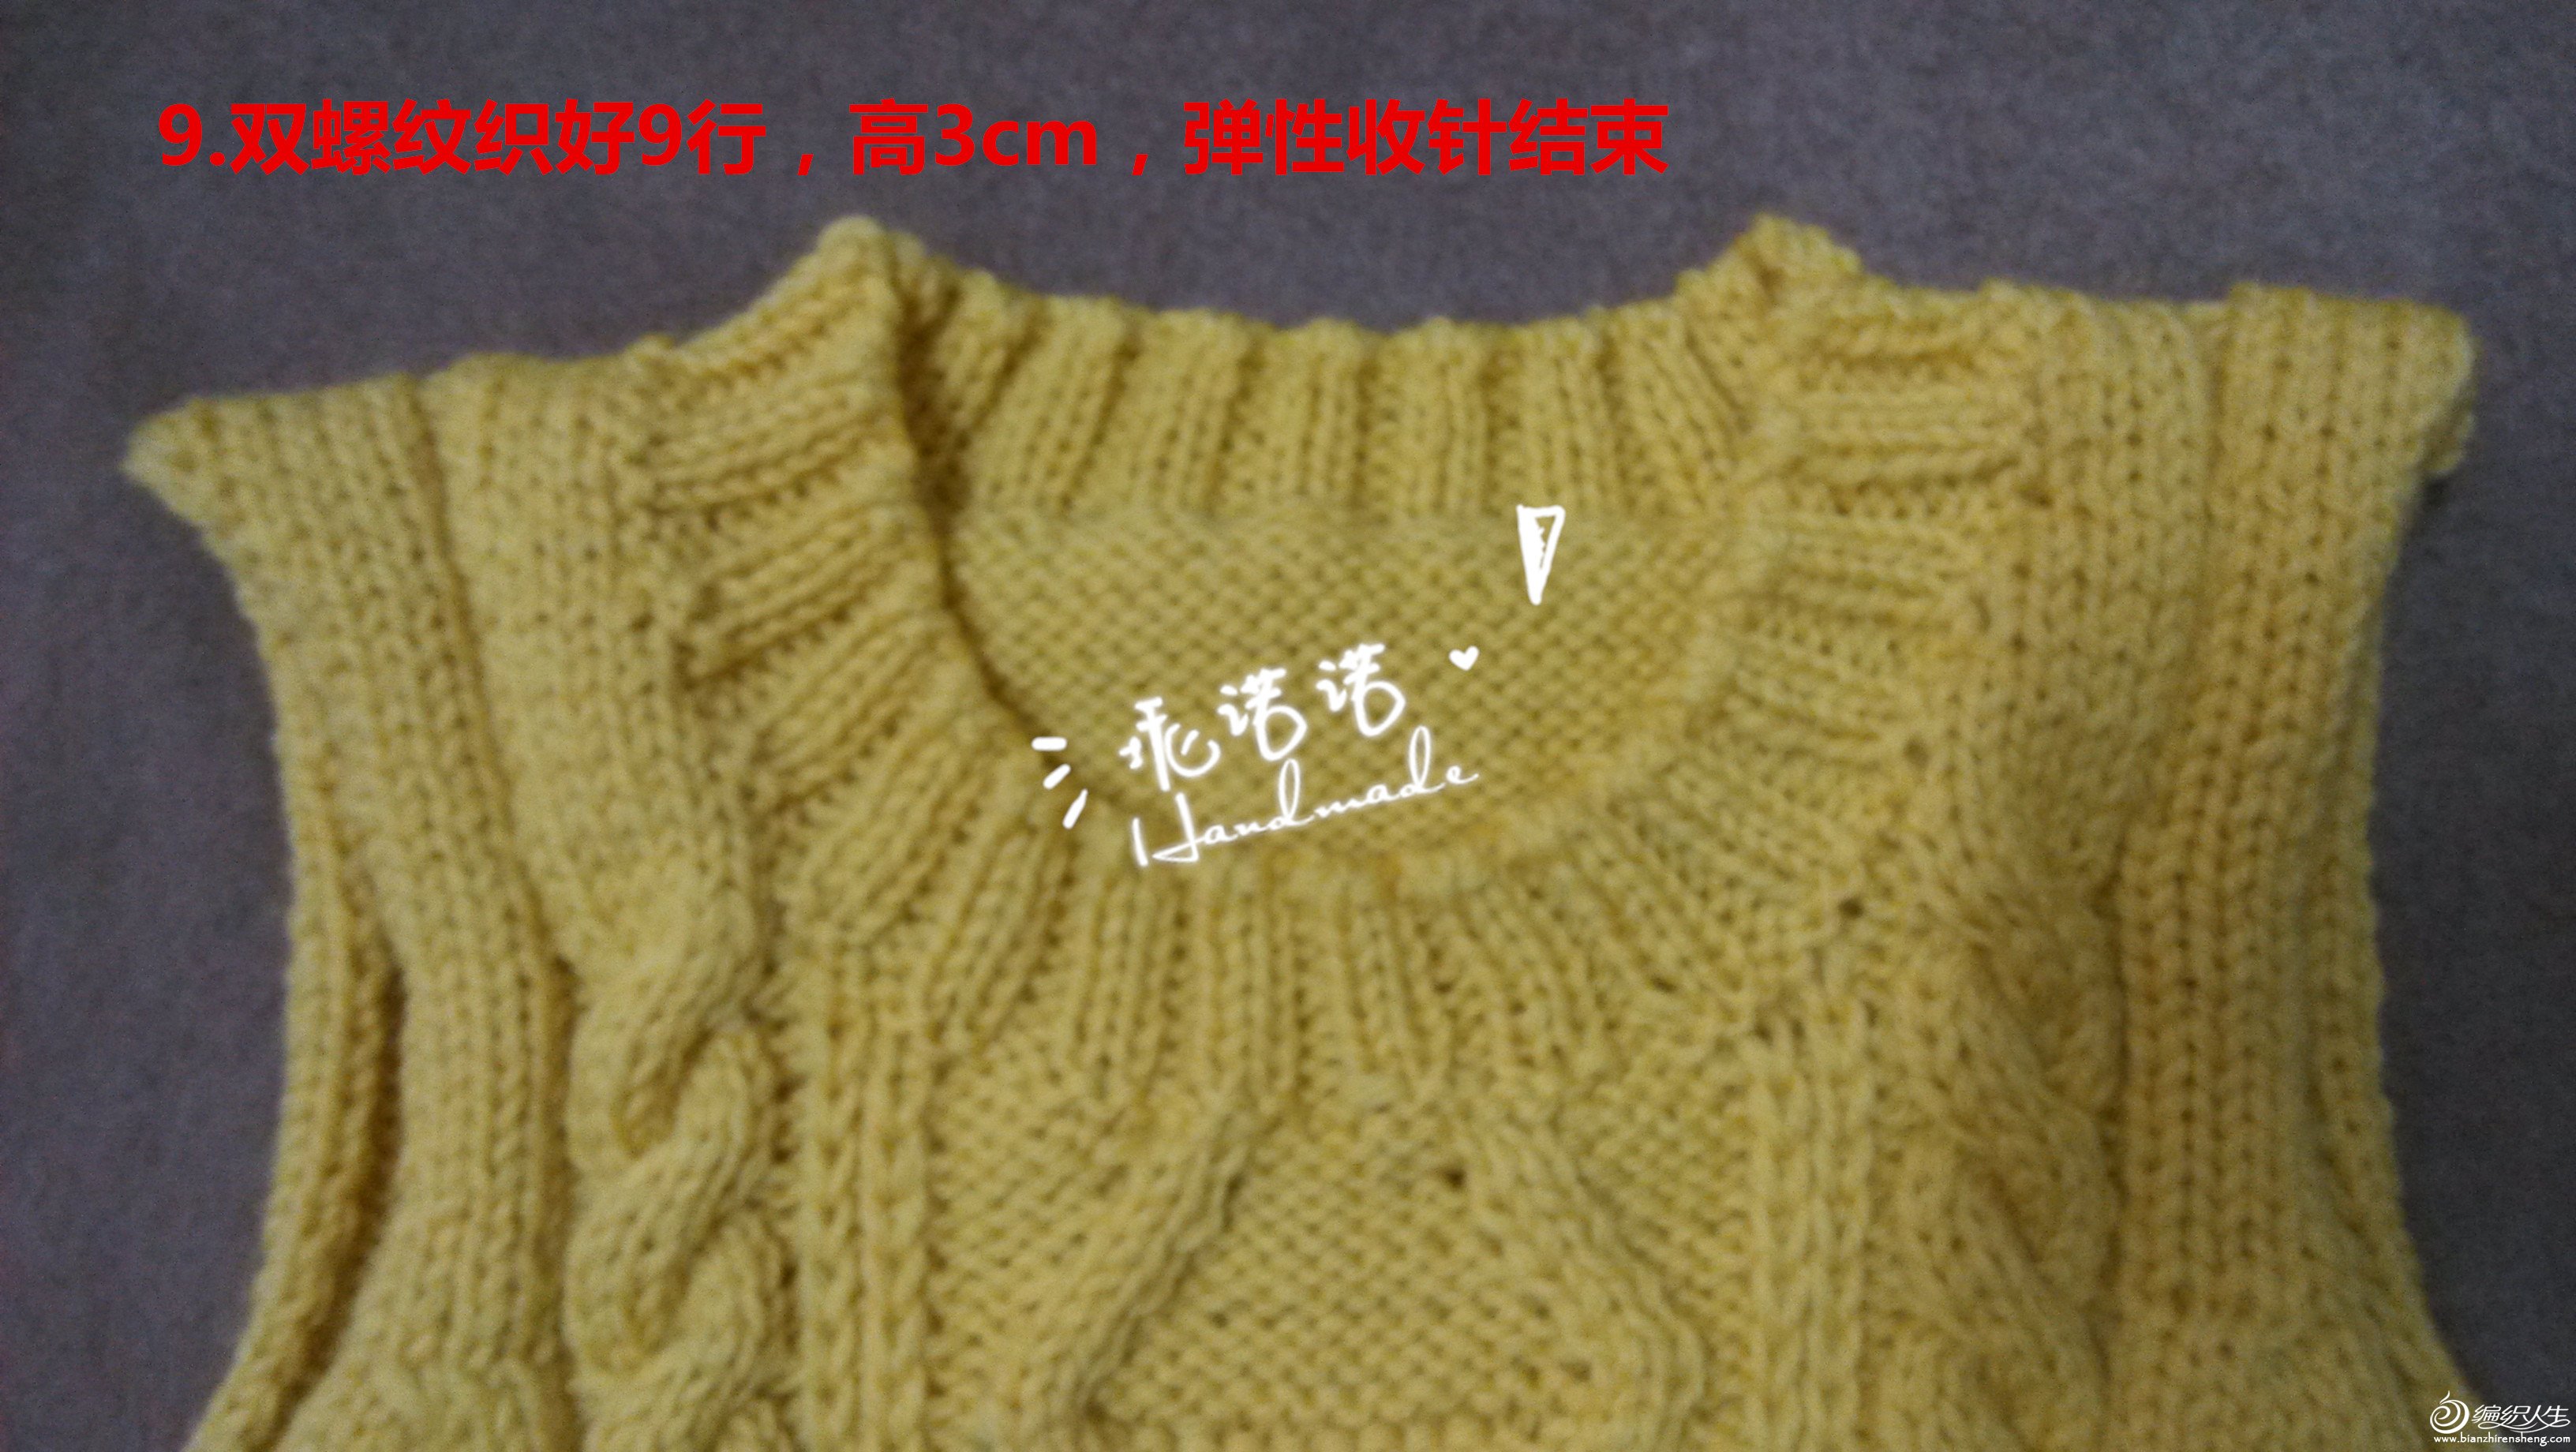 九色鹿米兰宝宝羊毛颜色非常柔和漂亮,织这款毛衣再合适不过了,具体